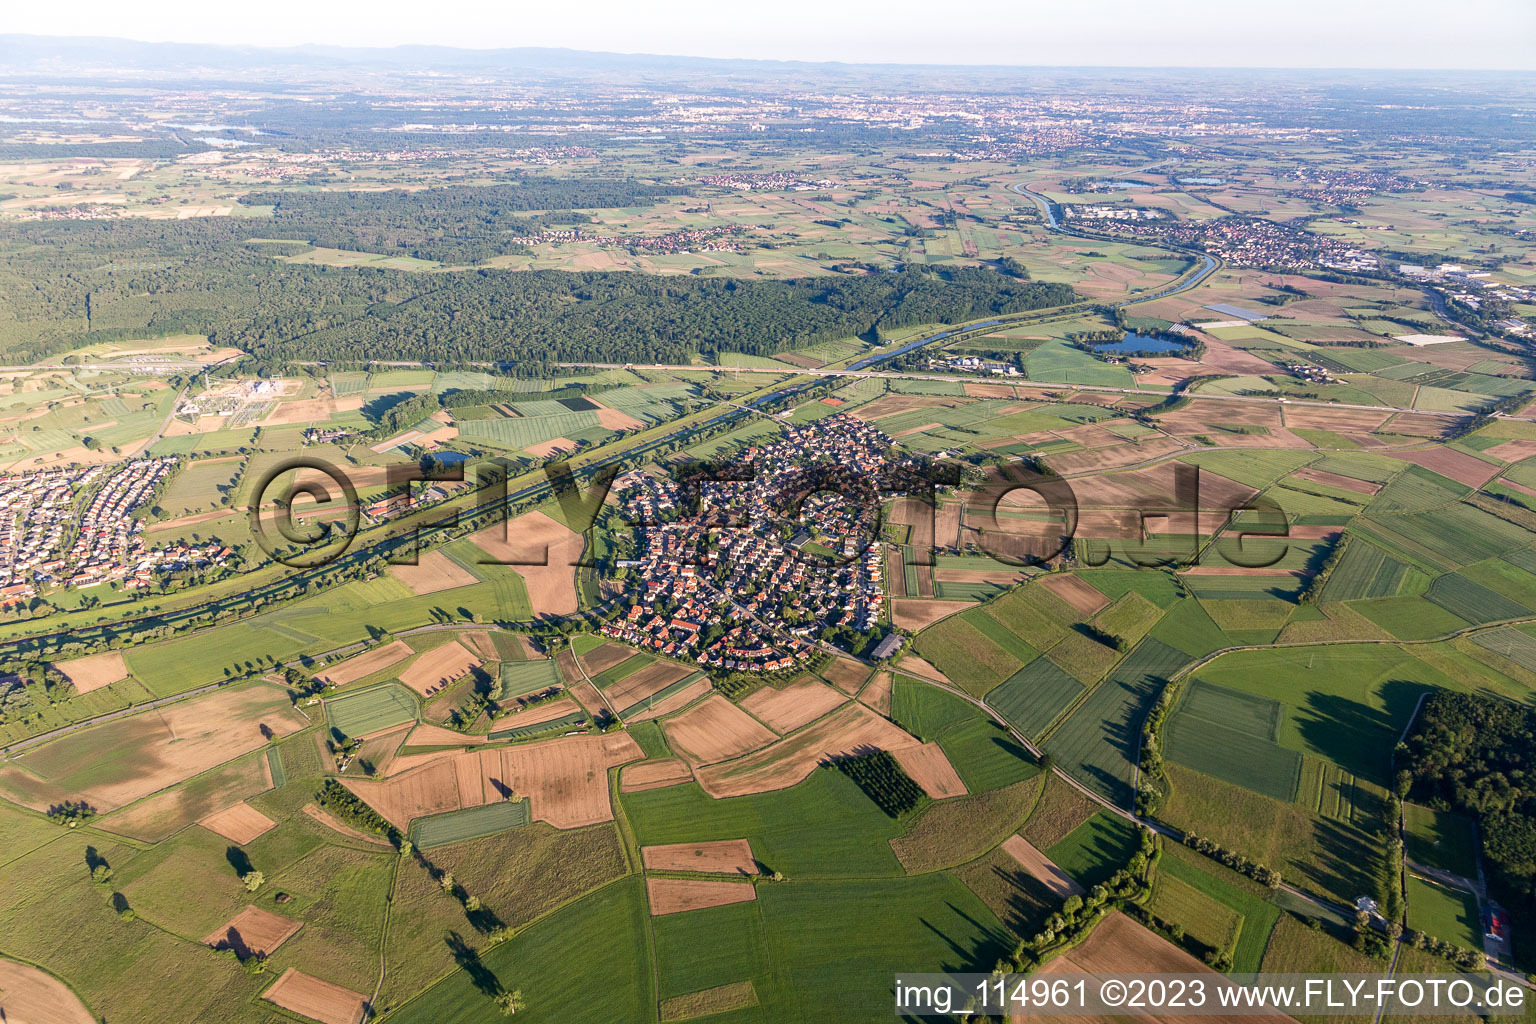 Vue aérienne de Quartier Griesheim in Offenburg dans le département Bade-Wurtemberg, Allemagne